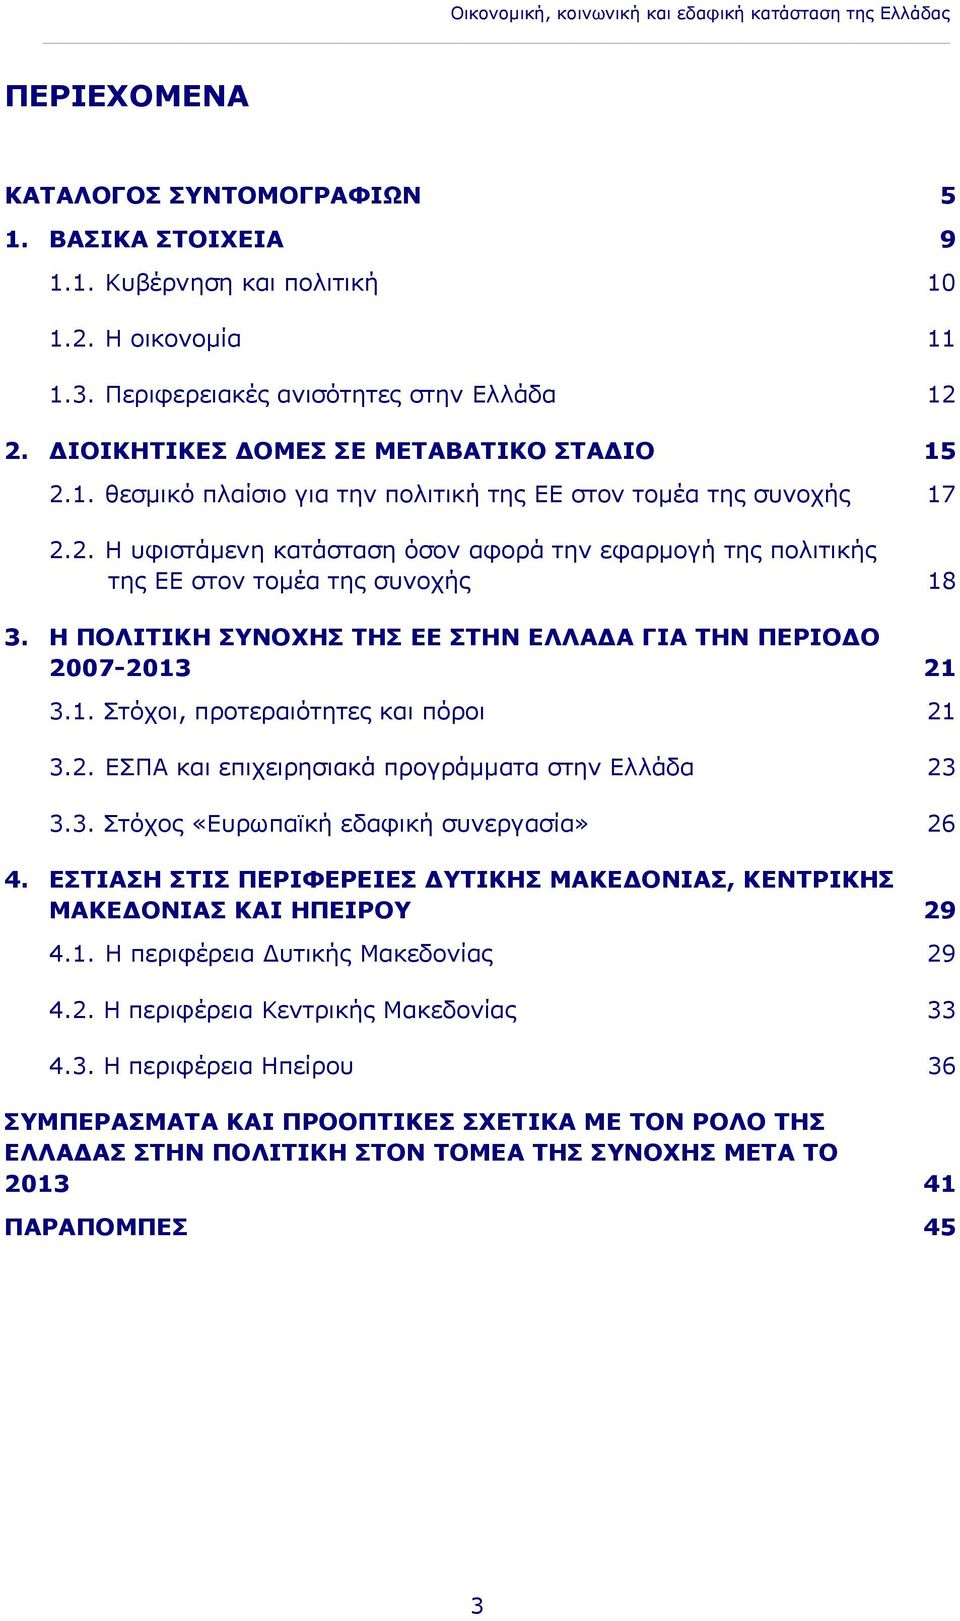 Η ΠΟΛΙΤΙΚΗ ΣΥΝΟΧΗΣ ΤΗΣ ΕΕ ΣΤΗΝ ΕΛΛΑΔΑ ΓΙΑ ΤΗΝ ΠΕΡΙΟΔΟ 2007-2013 21 3.1. Στόχοι, προτεραιότητες και πόροι 21 3.2. ΕΣΠΑ και επιχειρησιακά προγράμματα στην Ελλάδα 23 3.3. Στόχος «Ευρωπαϊκή εδαφική συνεργασία» 26 4.